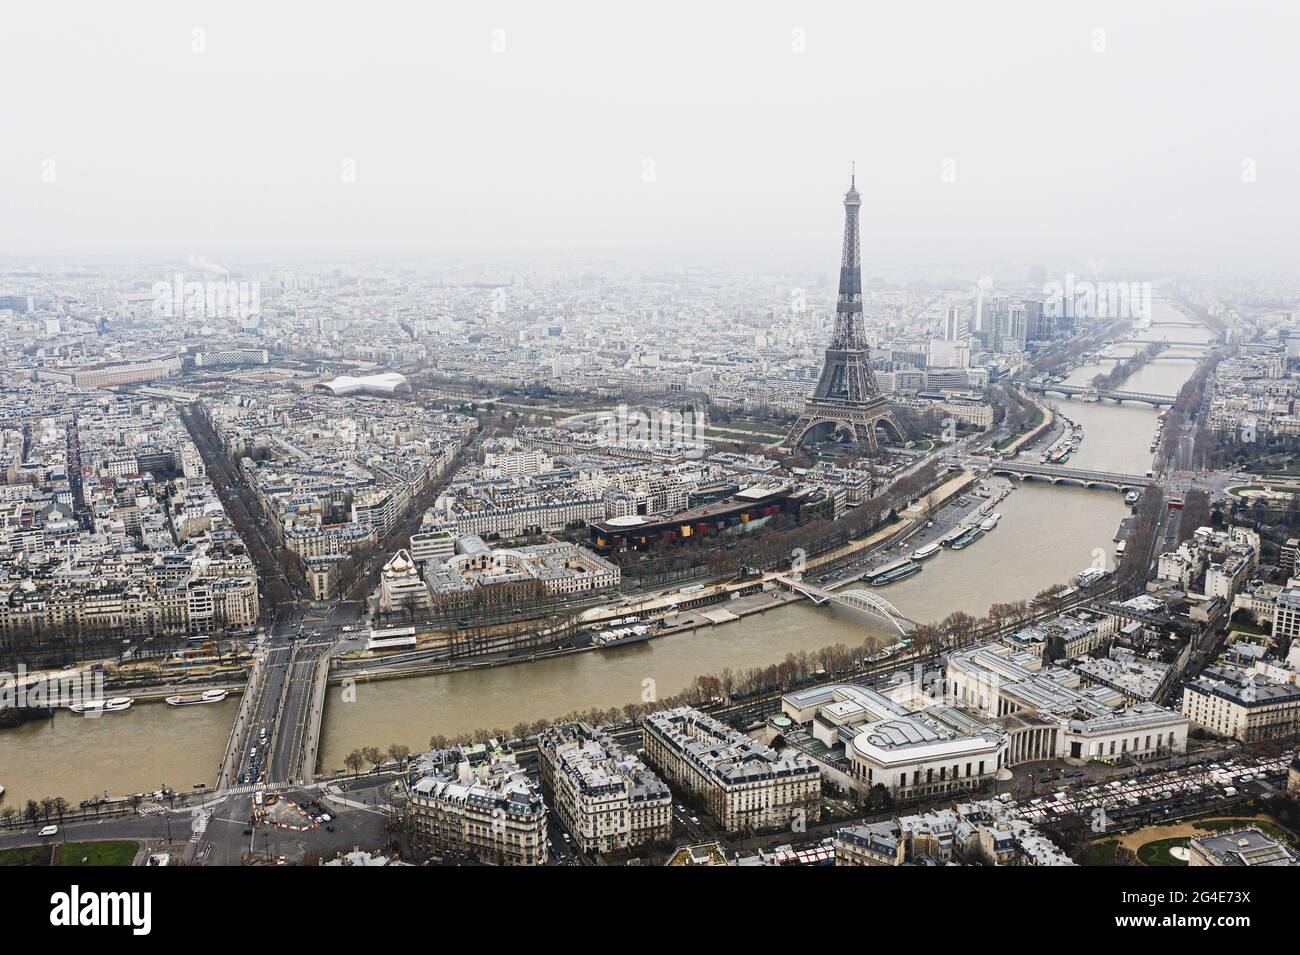 Vue sur la tour Eiffel et la rivière sur les toits de Paris par une journée gris et nuageux Banque D'Images